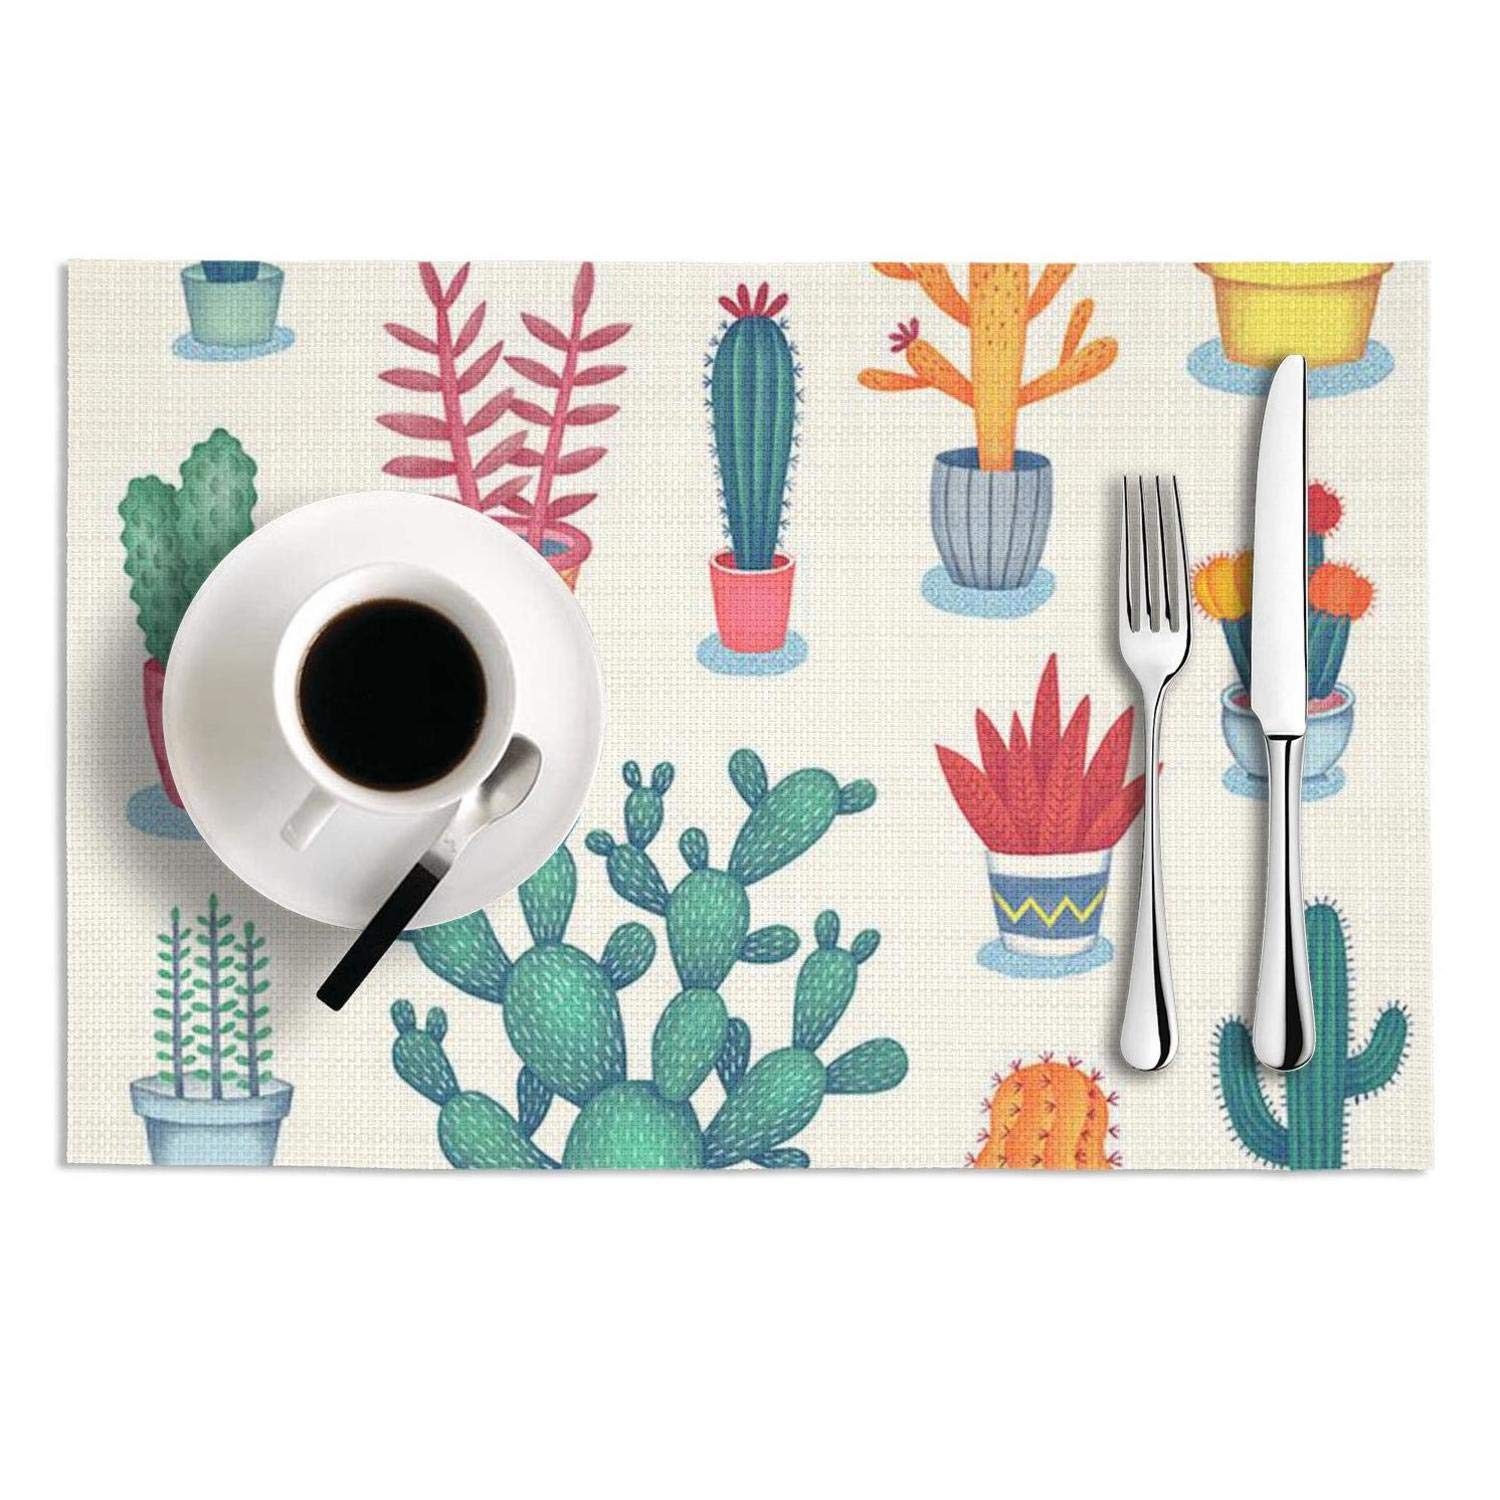 Cactus Dibujos - HD Wallpaper 